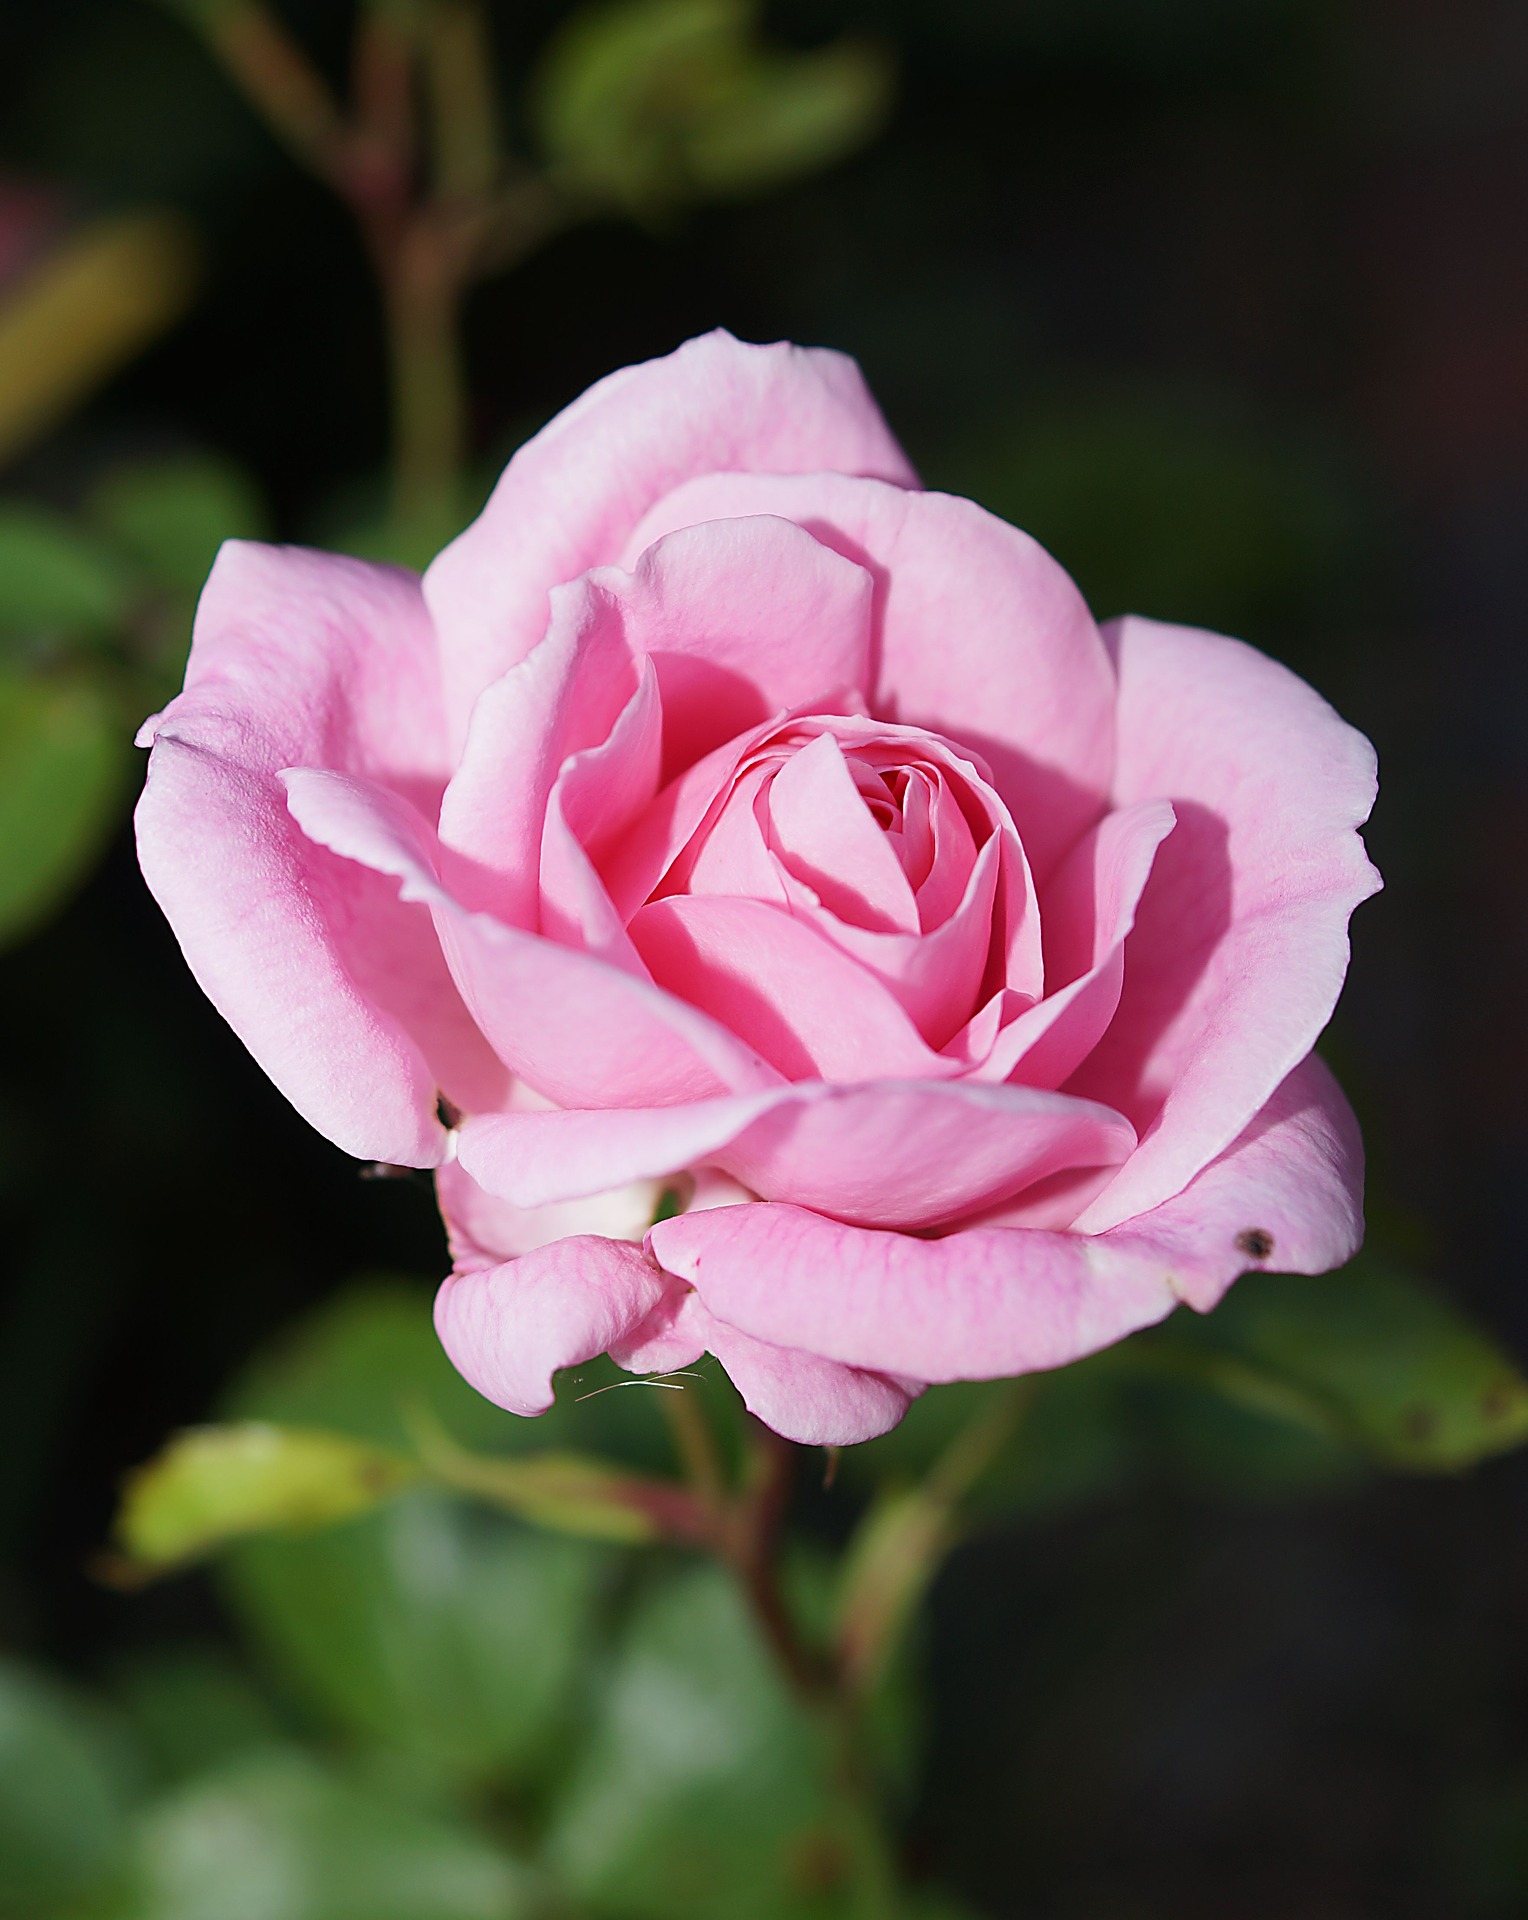 flower,rose,petals,pink rose,pink flower,plant